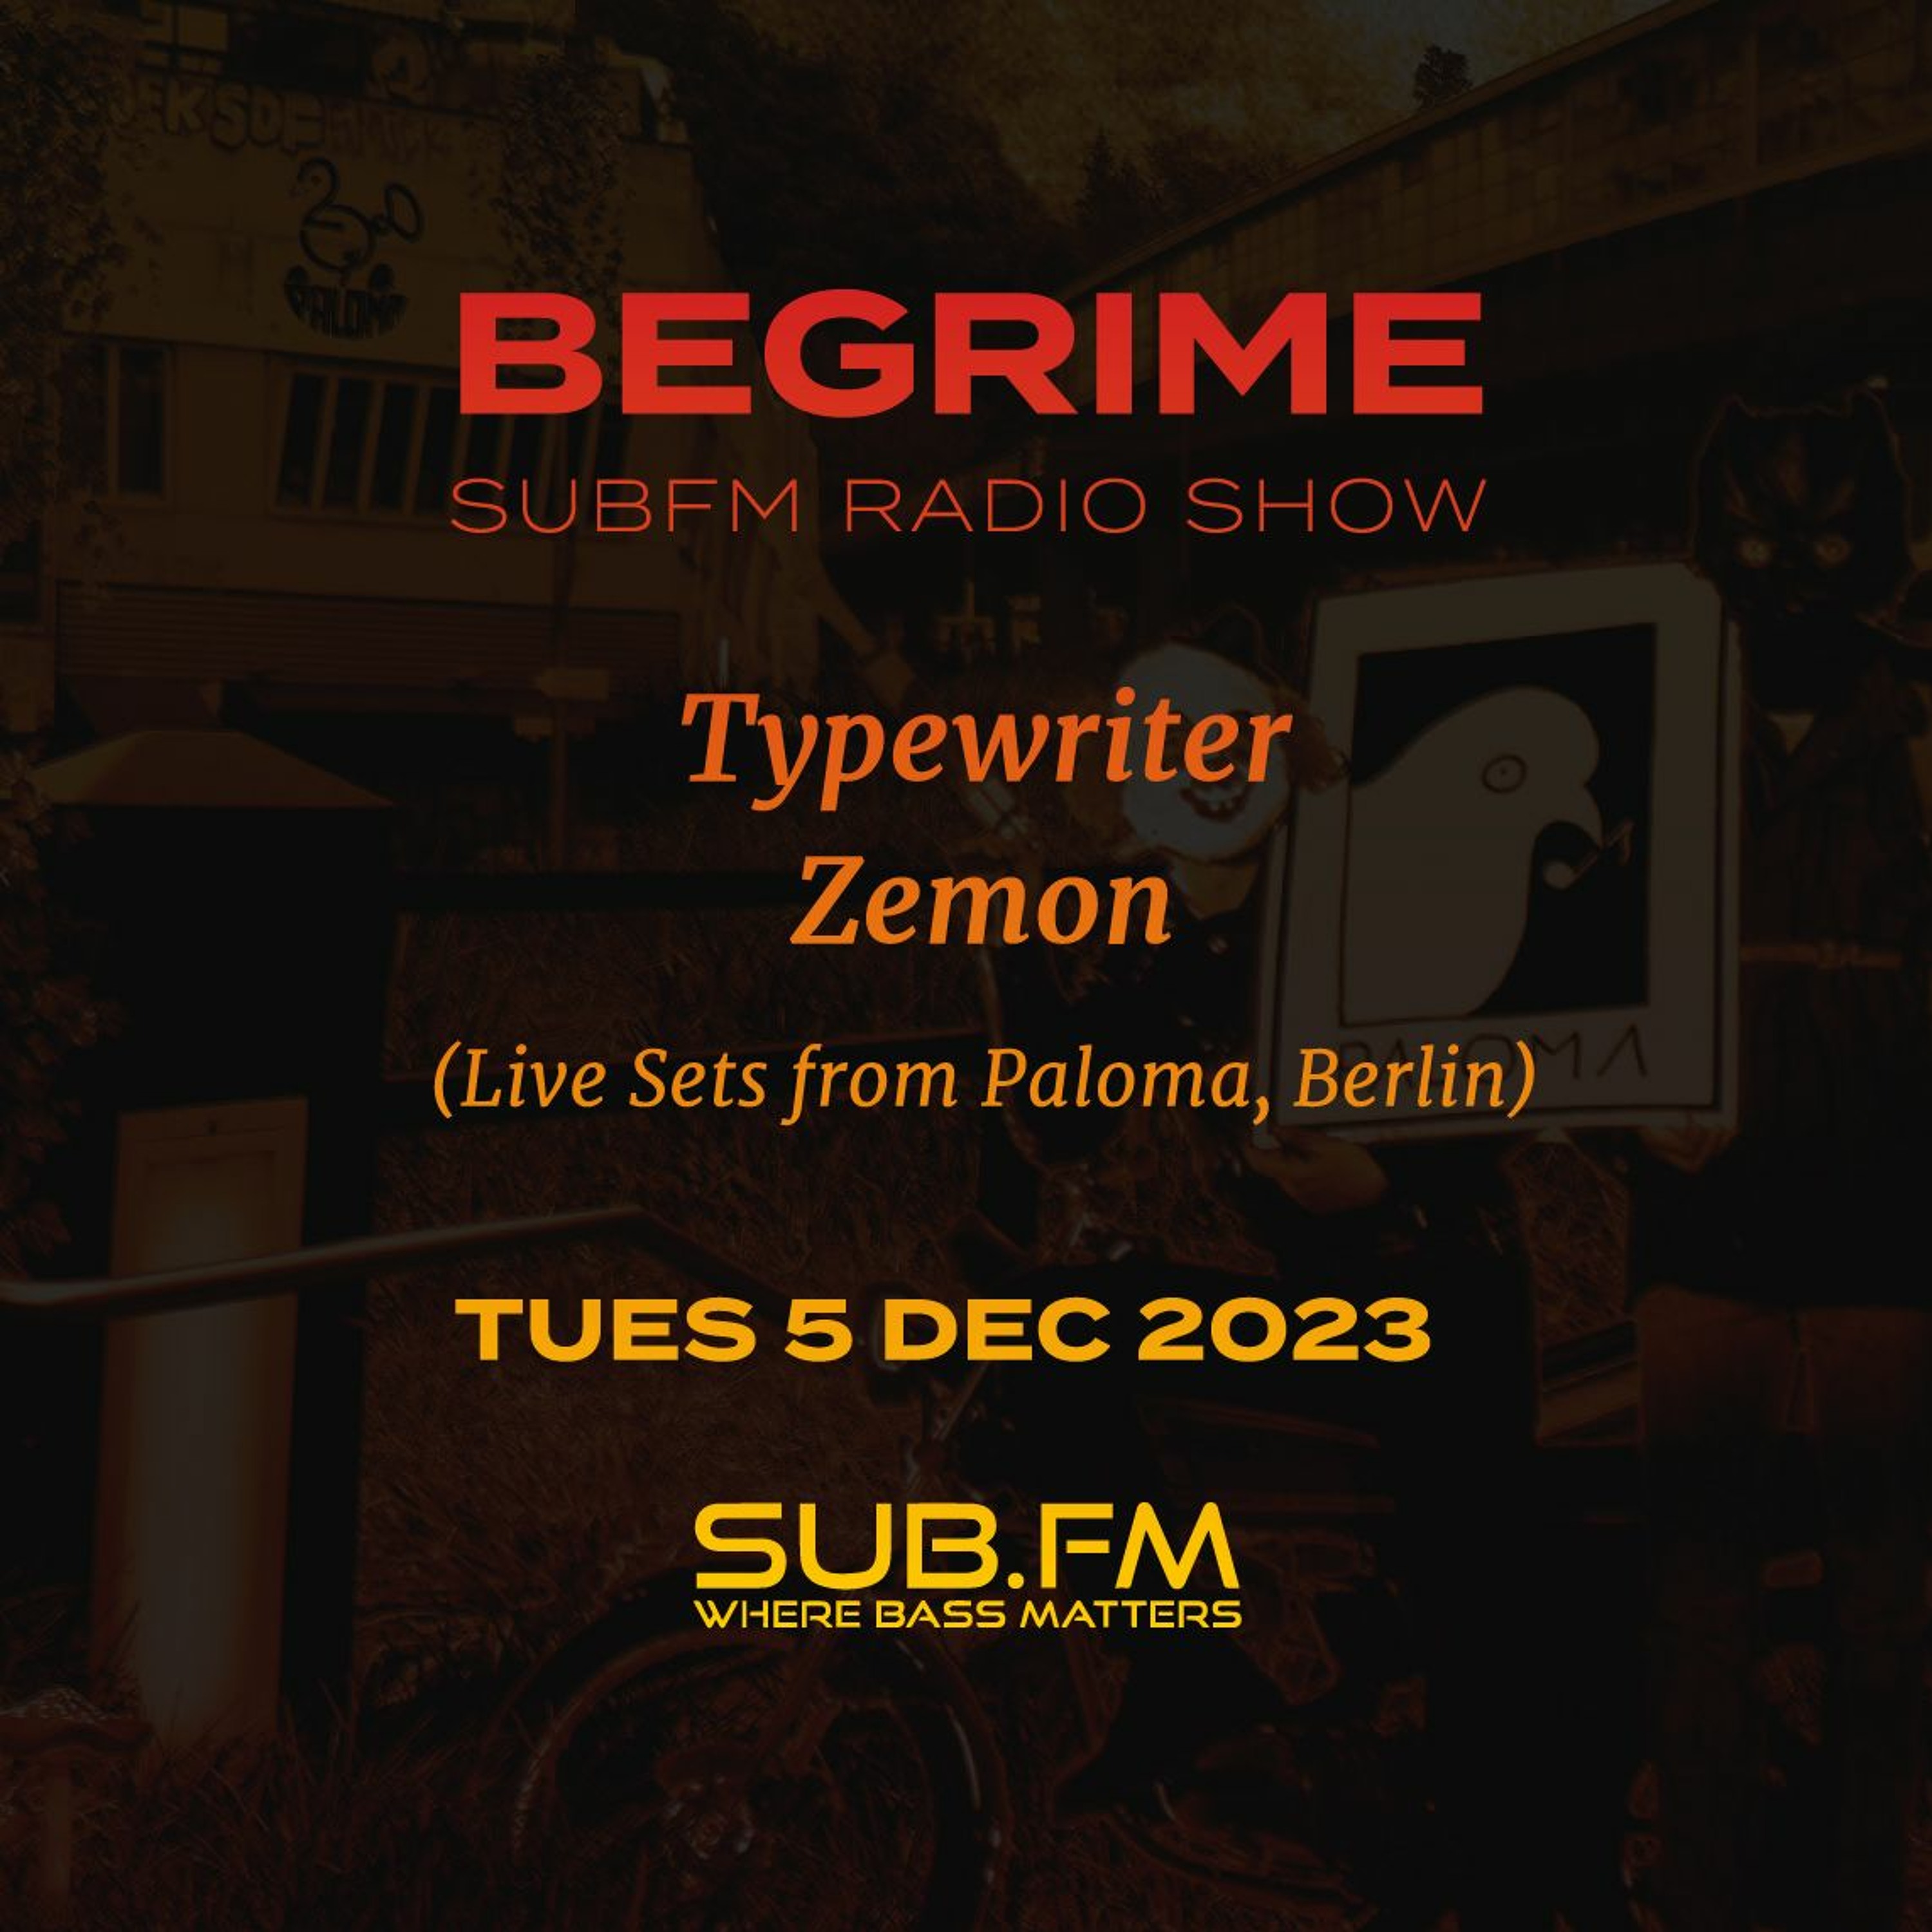 Begrime Typewriter Zemon Live At Paloma - 05 Dec 2023